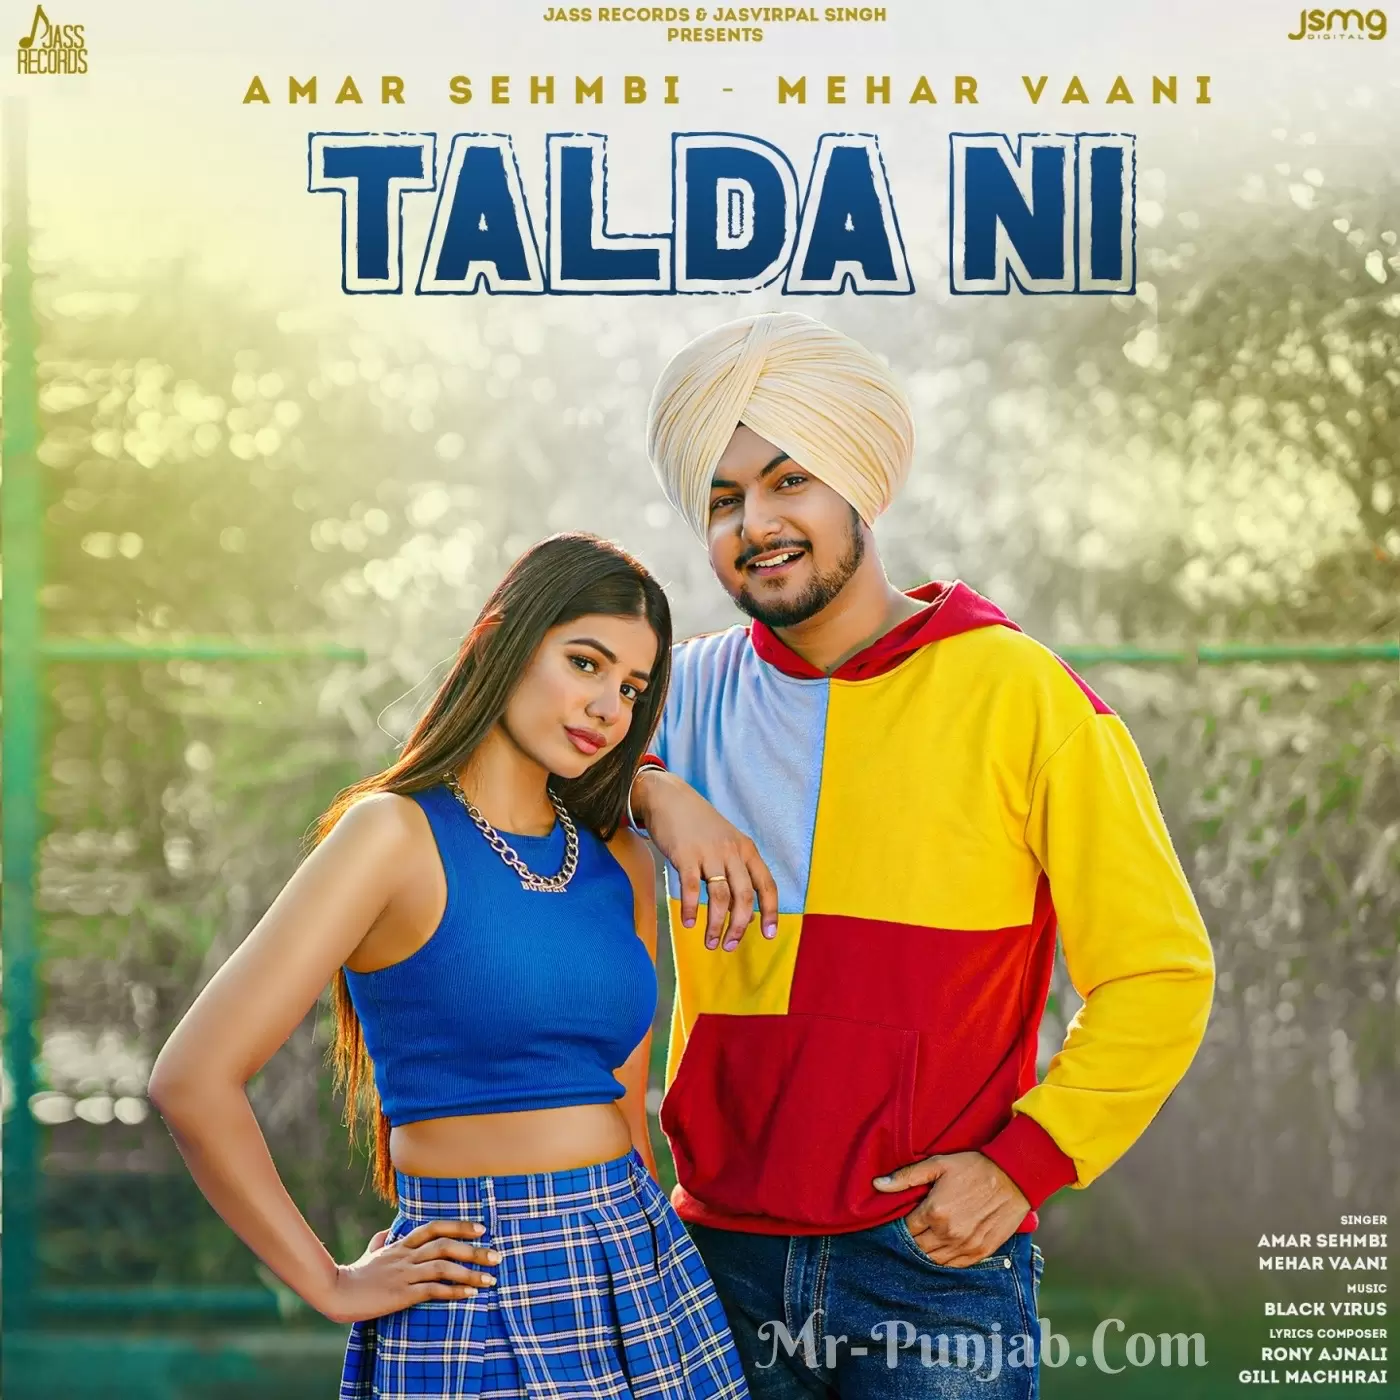 Talda Ni Amar Sehmbi Mp3 Download Song - Mr-Punjab